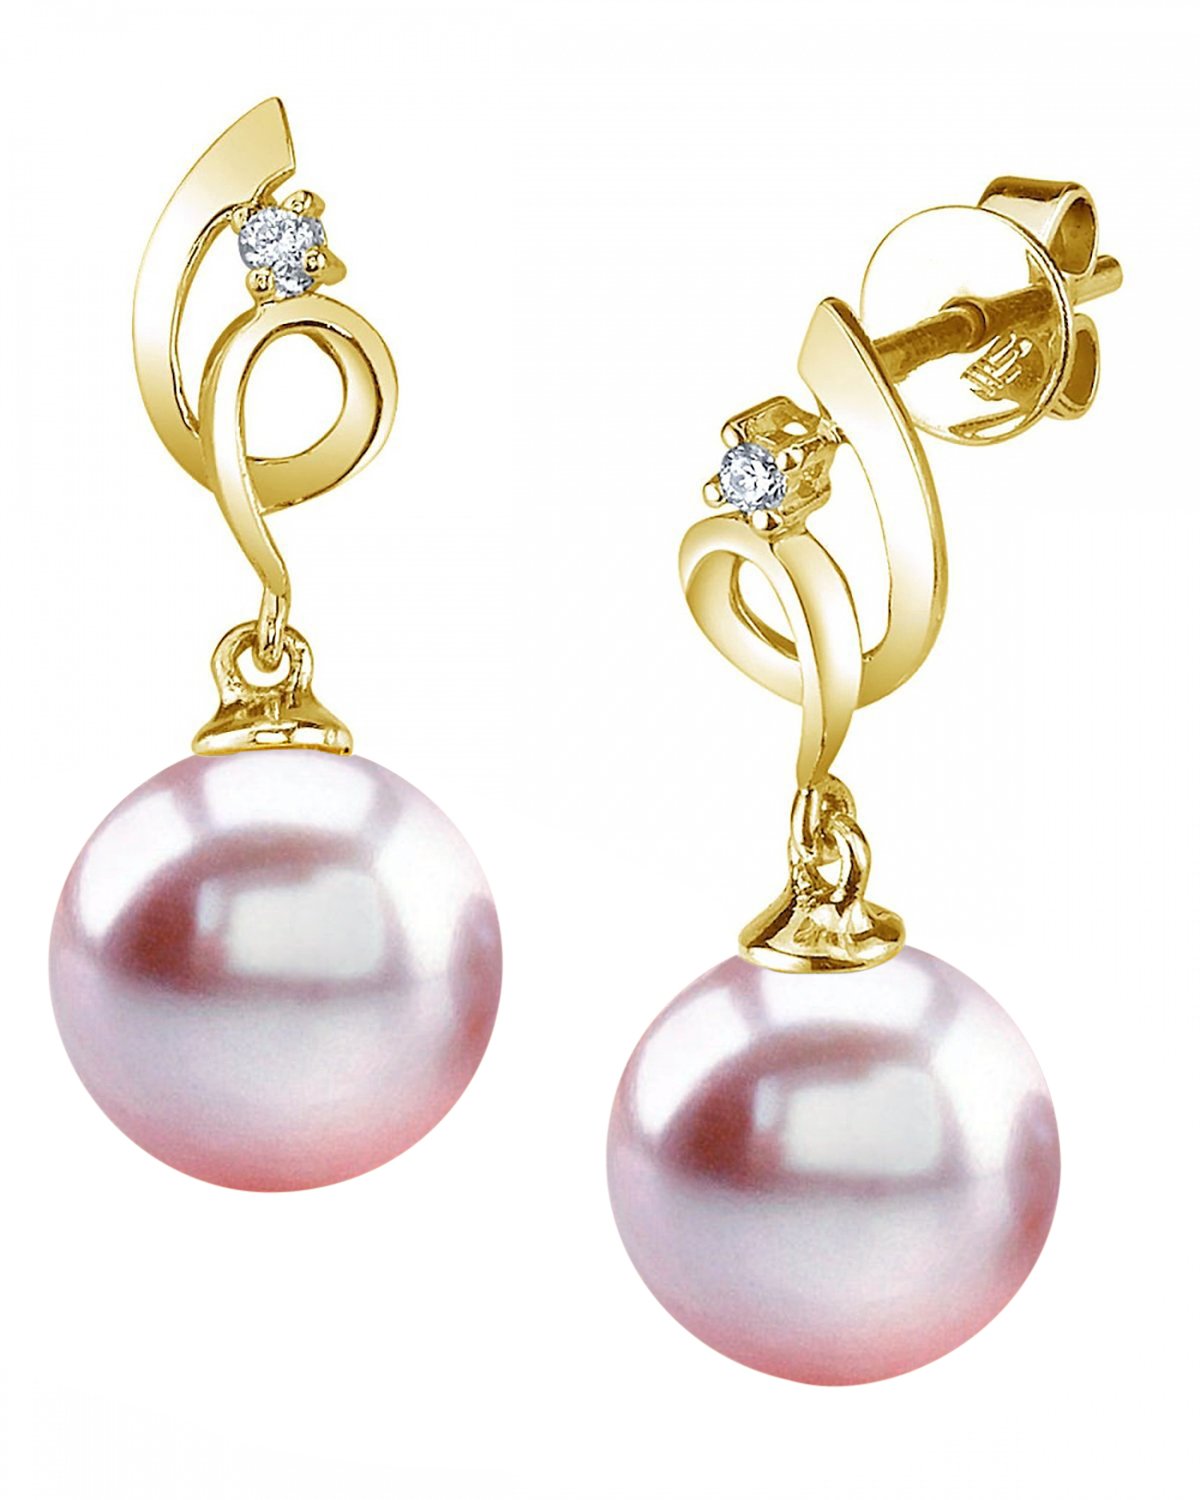 Buy Pink meenakari and pearl earrings by Nepra by Neha Goel at Aashni and Co